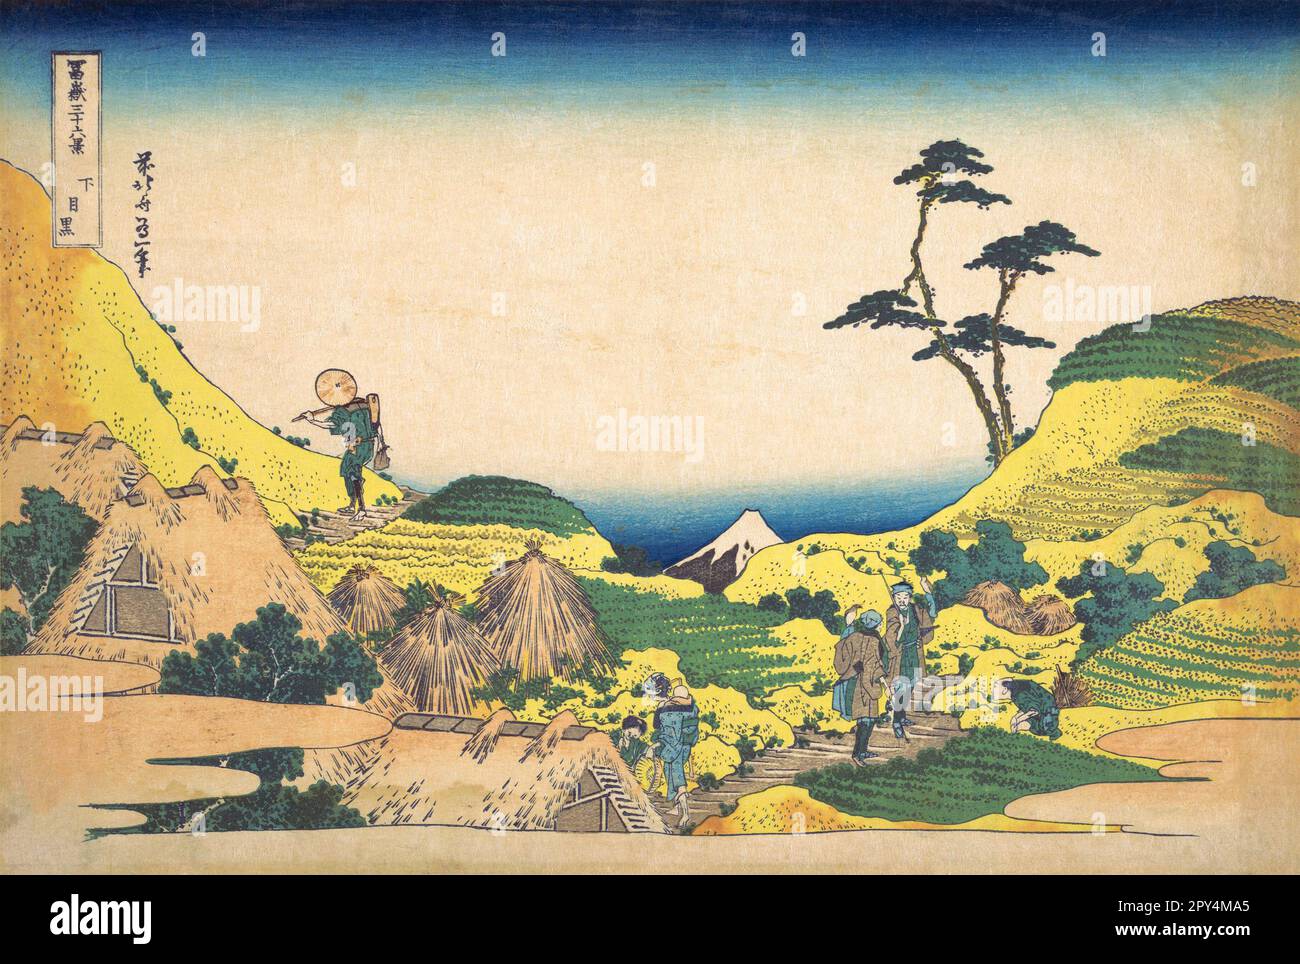 Japan: ‘Shimomeguro (Lower Meguro)’. Ukiyo-e Holzschnitt aus der Serie ‘Thirty-Six views of Mount Fuji’ von Katsushika Hokusai (31. Oktober 1760 - 10. Mai 1849), 1830. ‘Thirty-Six Views of Mount Fuji’ ist eine Serie von Holzschnitten der japanischen Künstlerin Katsushika Hokusai, die „Sukiyo-e“ ‘. Die Serie zeigt den Fuji in unterschiedlichen Jahreszeiten und Wetterbedingungen an verschiedenen Orten und Entfernungen. Es besteht tatsächlich aus 46 Drucken, die zwischen 1826 und 1833 entstanden sind. Die ersten 36 wurden in die Originalpublikation aufgenommen, und aufgrund ihrer Popularität wurden nach der Originalpublikation 10 weitere hinzugefügt. Stockfoto